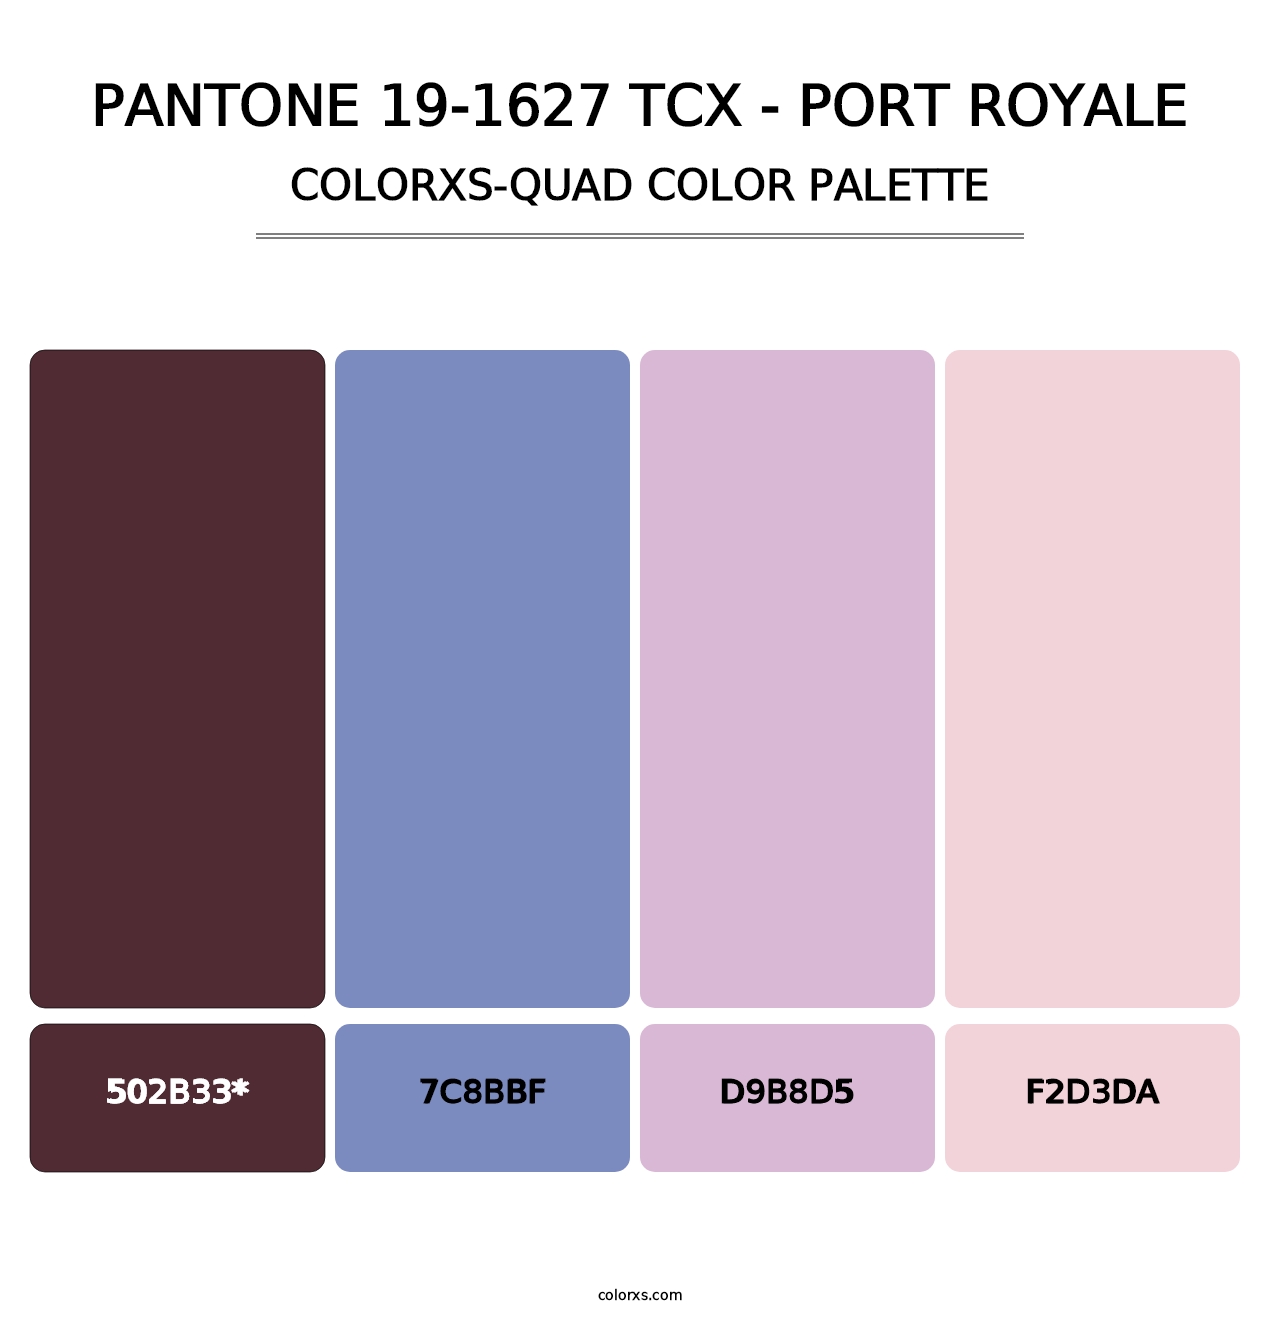 PANTONE 19-1627 TCX - Port Royale - Colorxs Quad Palette